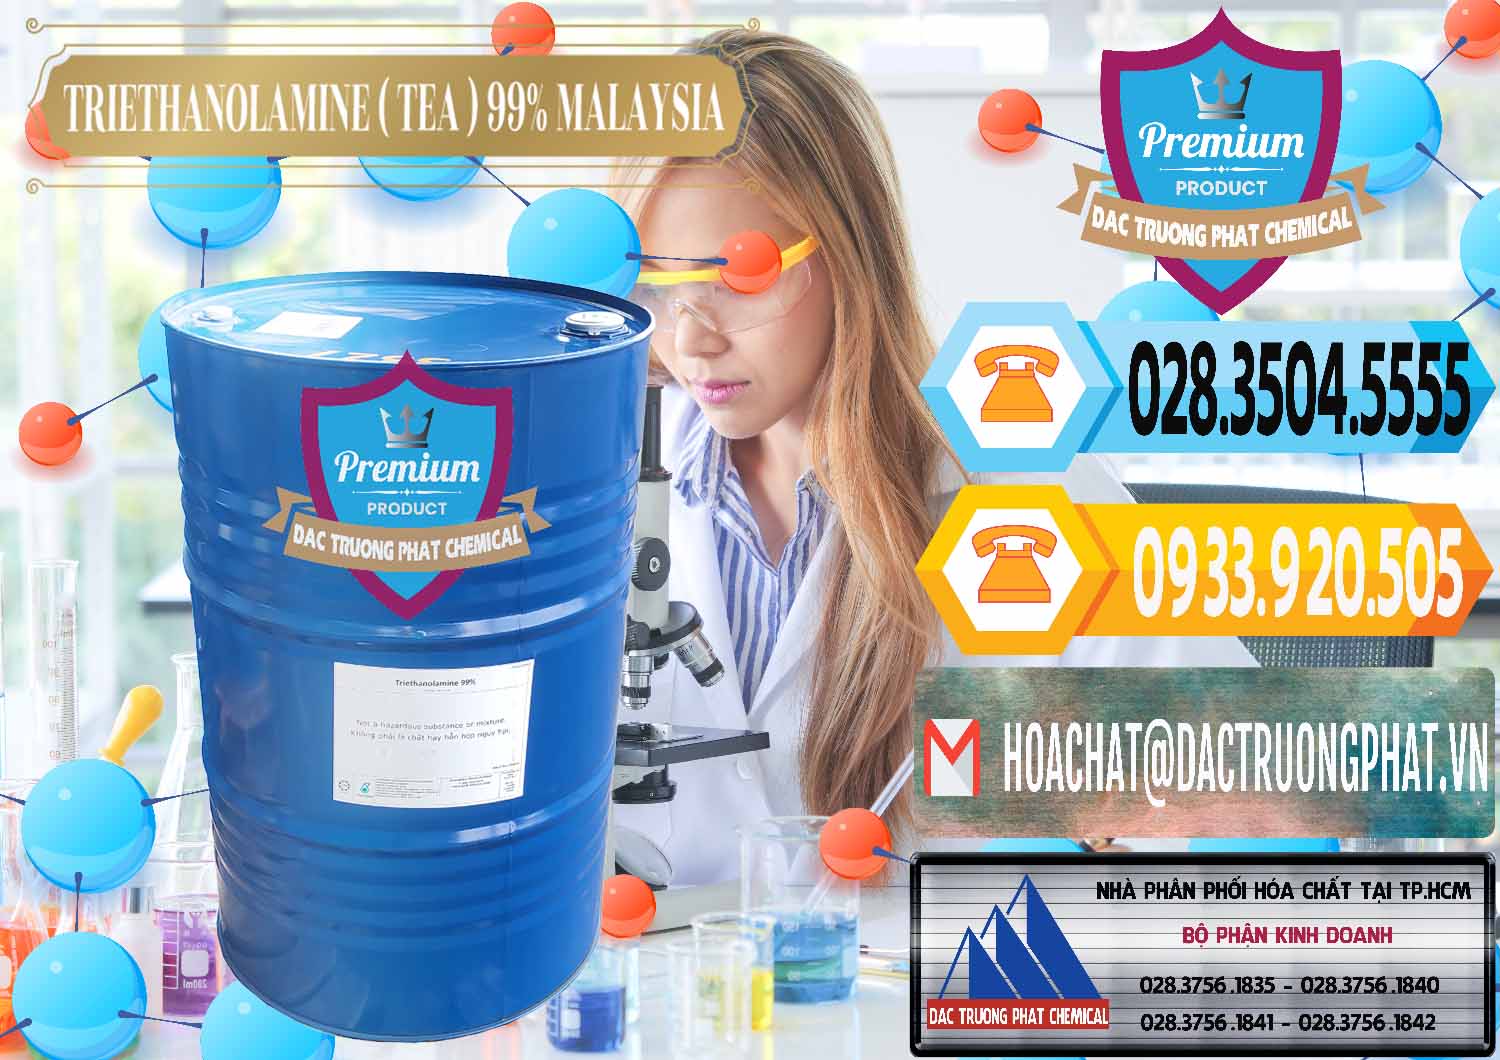 Nơi bán _ cung cấp TEA - Triethanolamine 99% Mã Lai Malaysia - 0323 - Cty chuyên cung ứng _ phân phối hóa chất tại TP.HCM - hoachattayrua.net